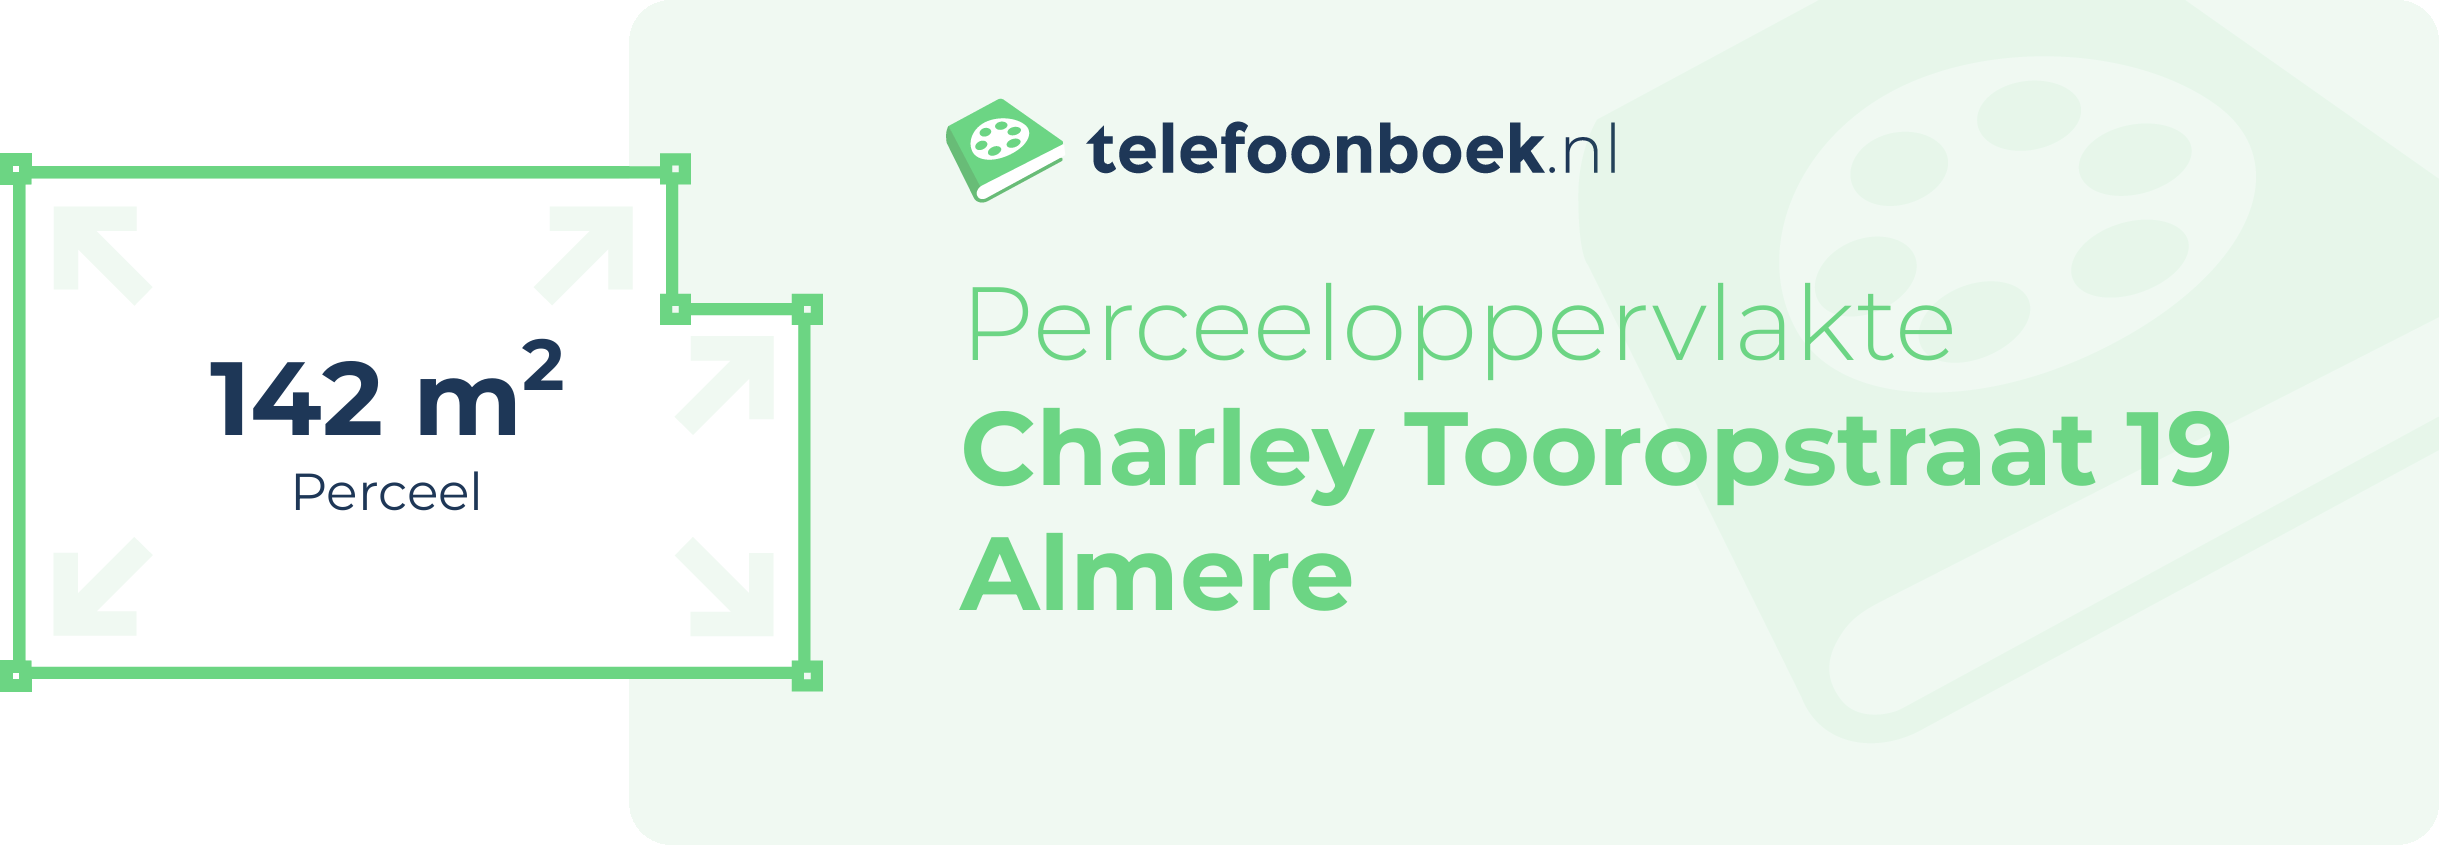 Perceeloppervlakte Charley Tooropstraat 19 Almere